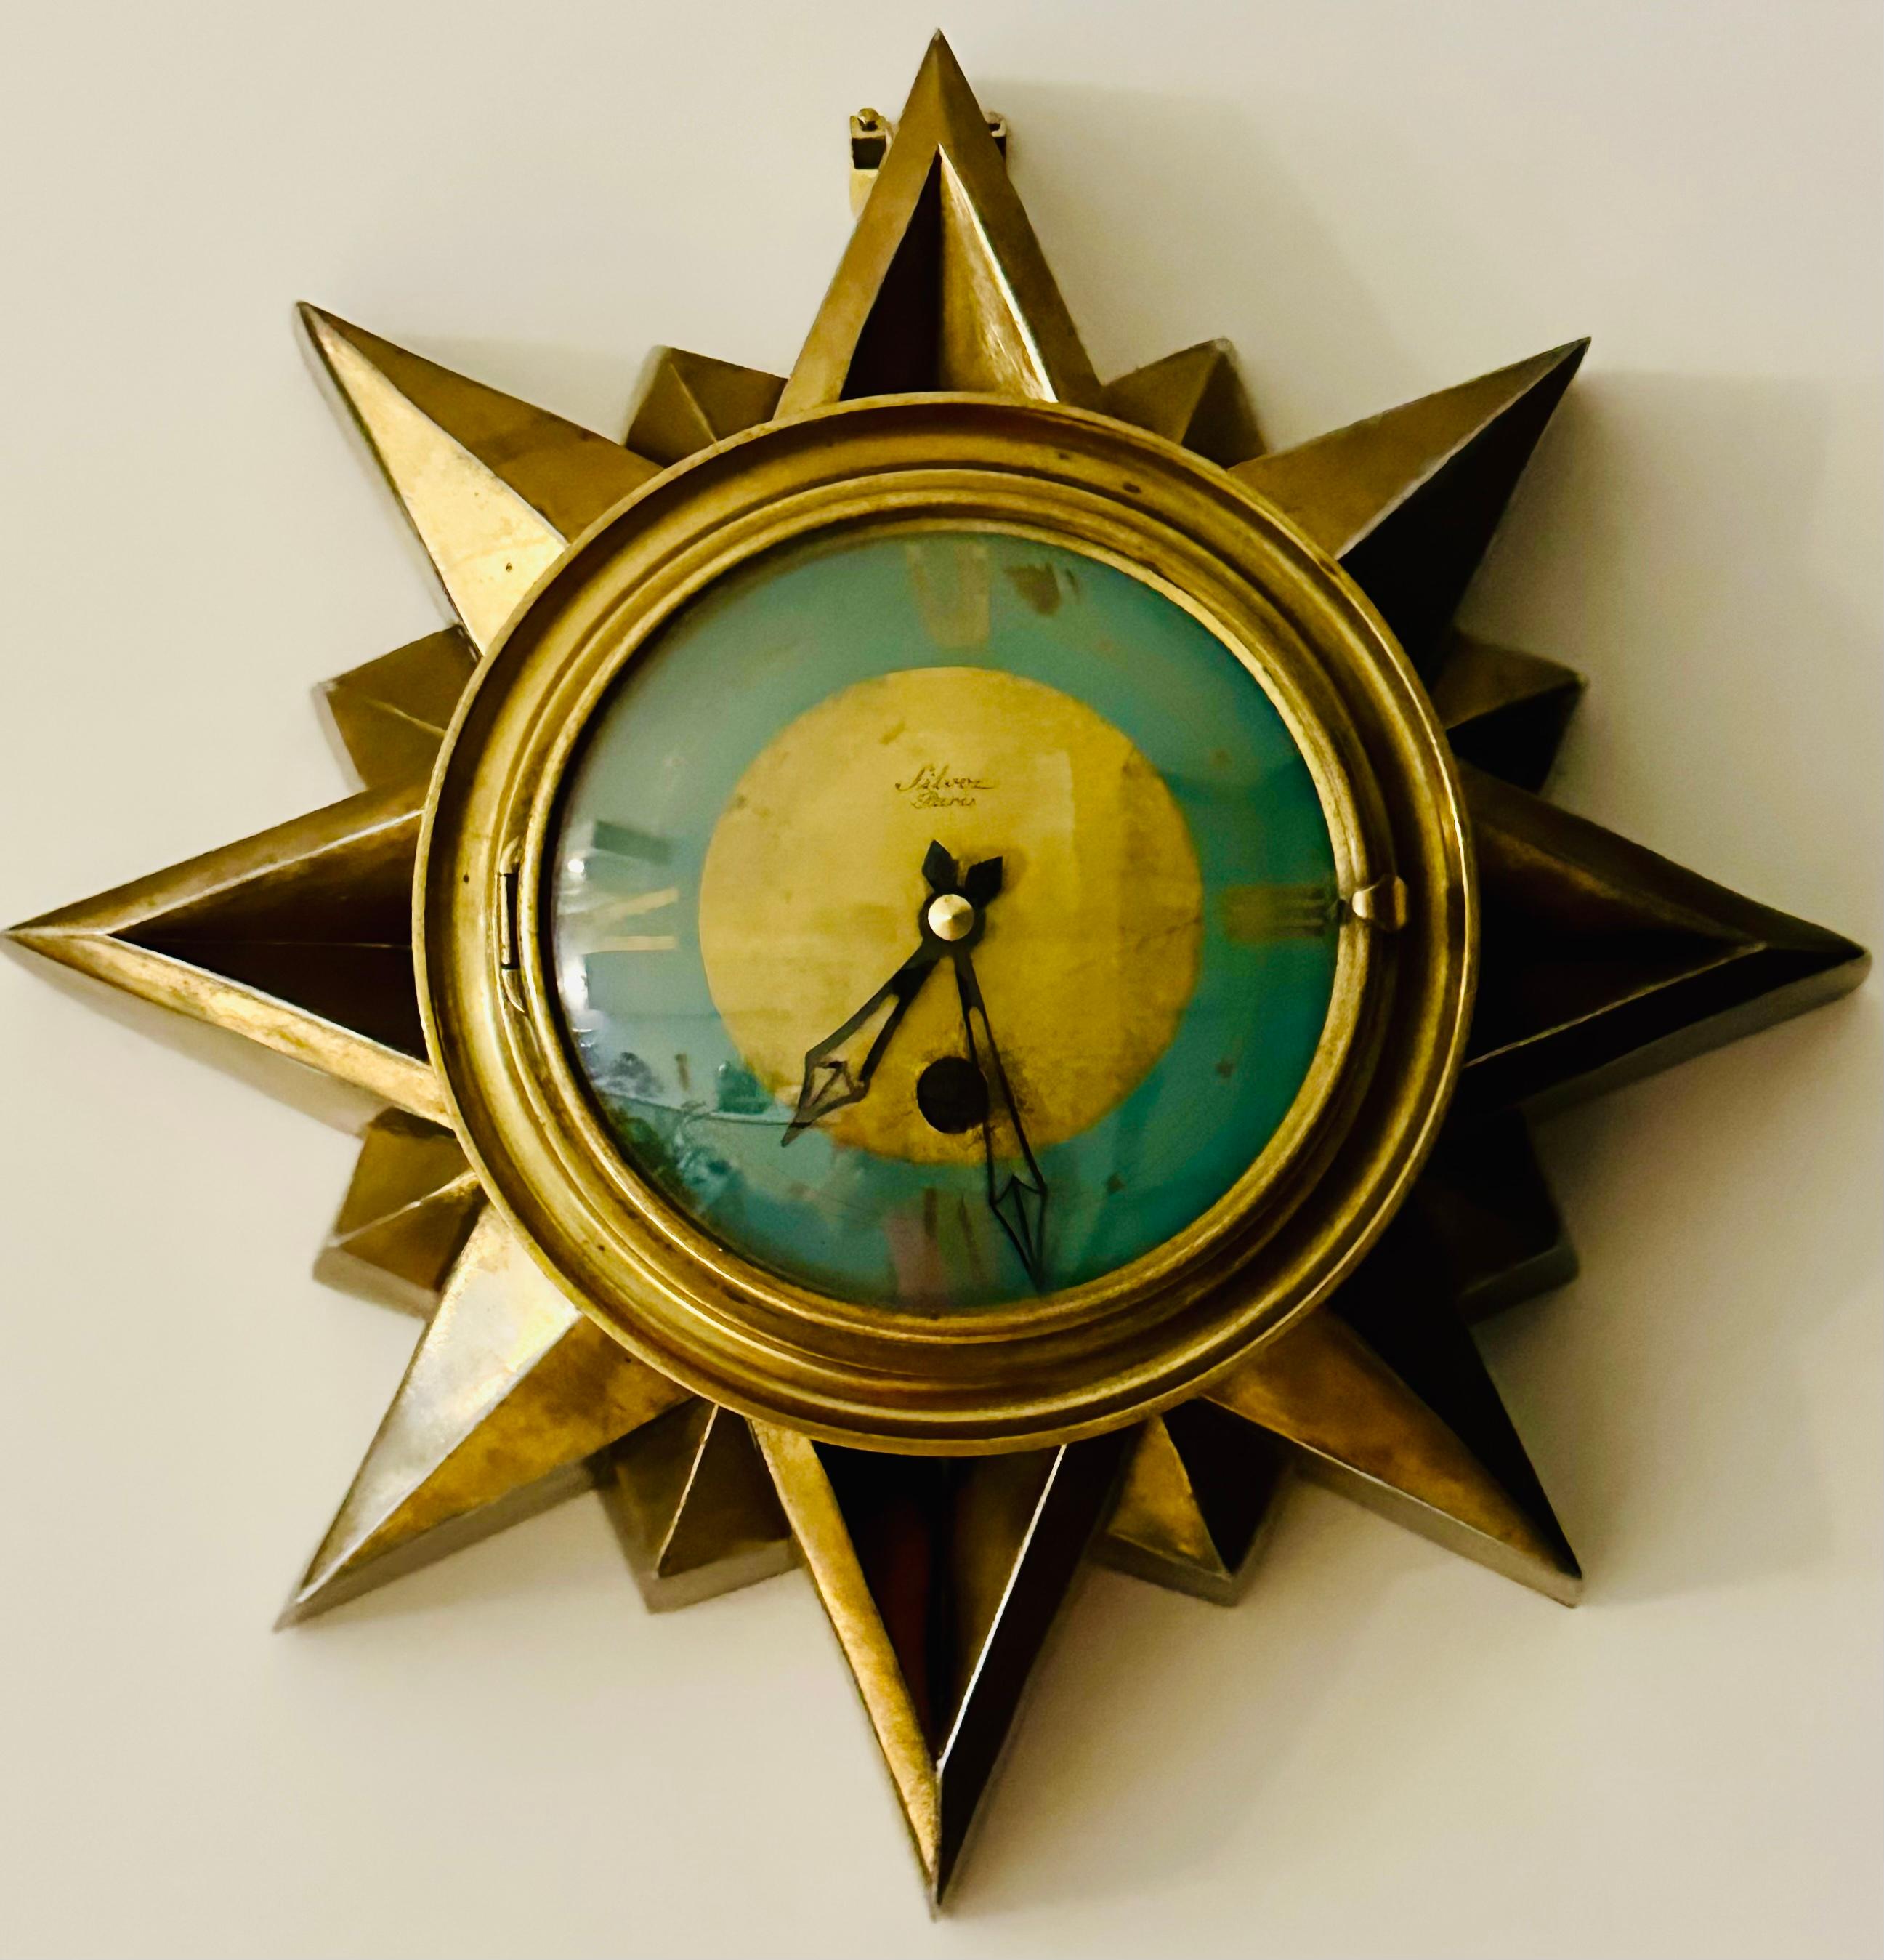 Horloge murale Art déco française des années 1930, en laiton, à décor ensoleillé, fabriquée par Cartel Silvoz Paris. L'horloge est fabriquée en acier plaqué laiton et est formée d'un intéressant design en forme de soleil, avec une série de rayons de